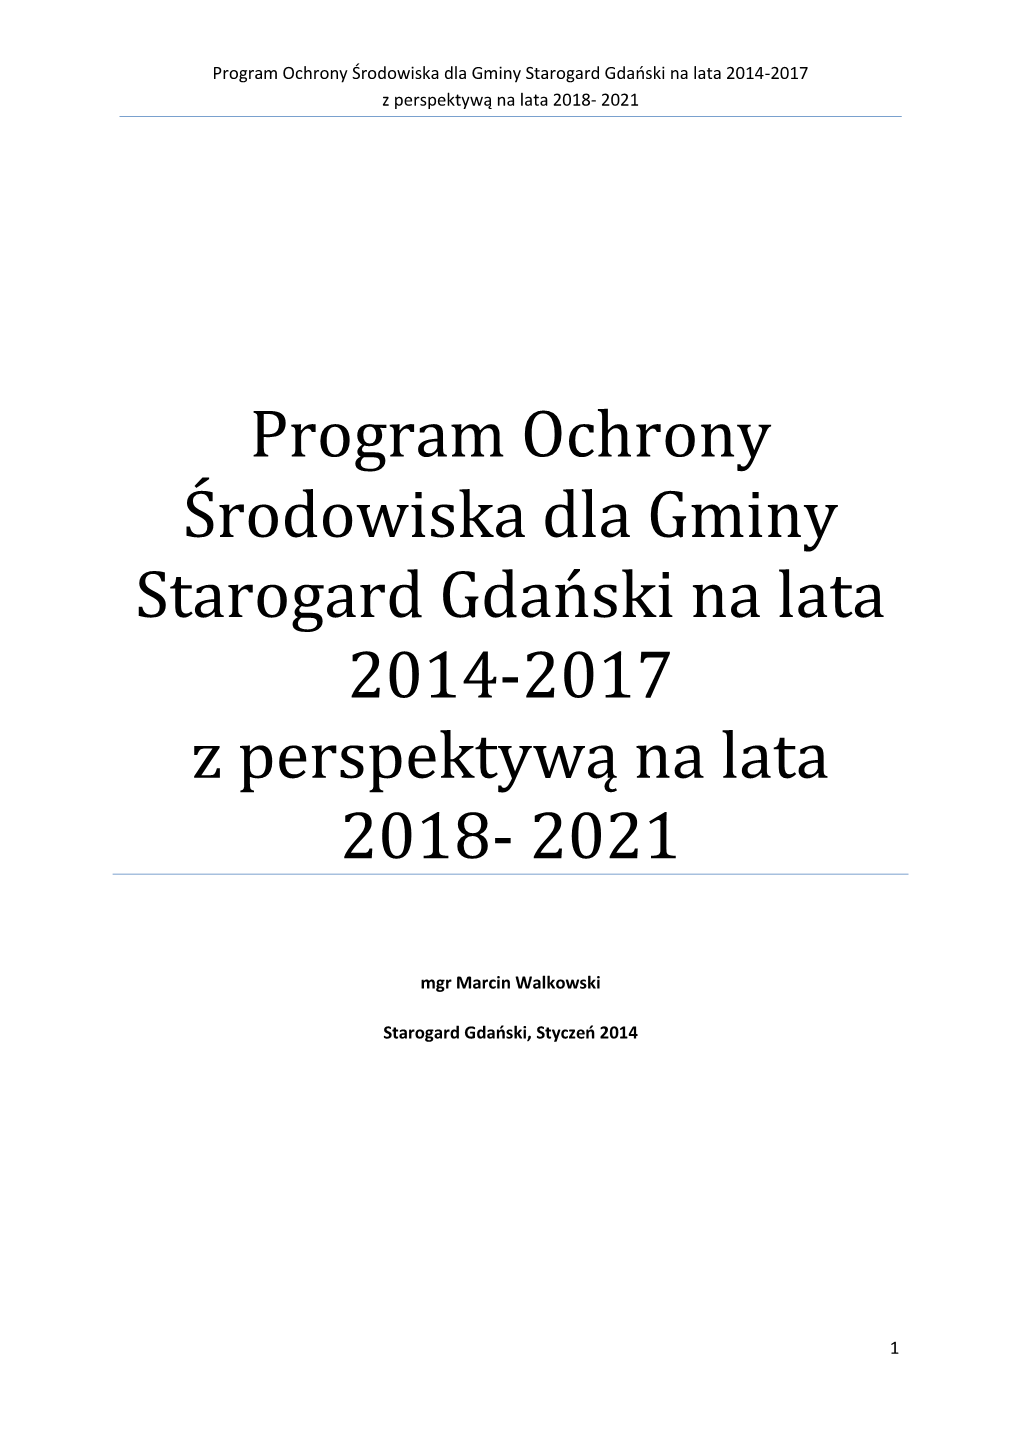 Program Ochrony Środowiska Dla Gminy Starogard Gdański Na Lata 2014-2017 Z Perspektywą Na Lata 2018- 2021